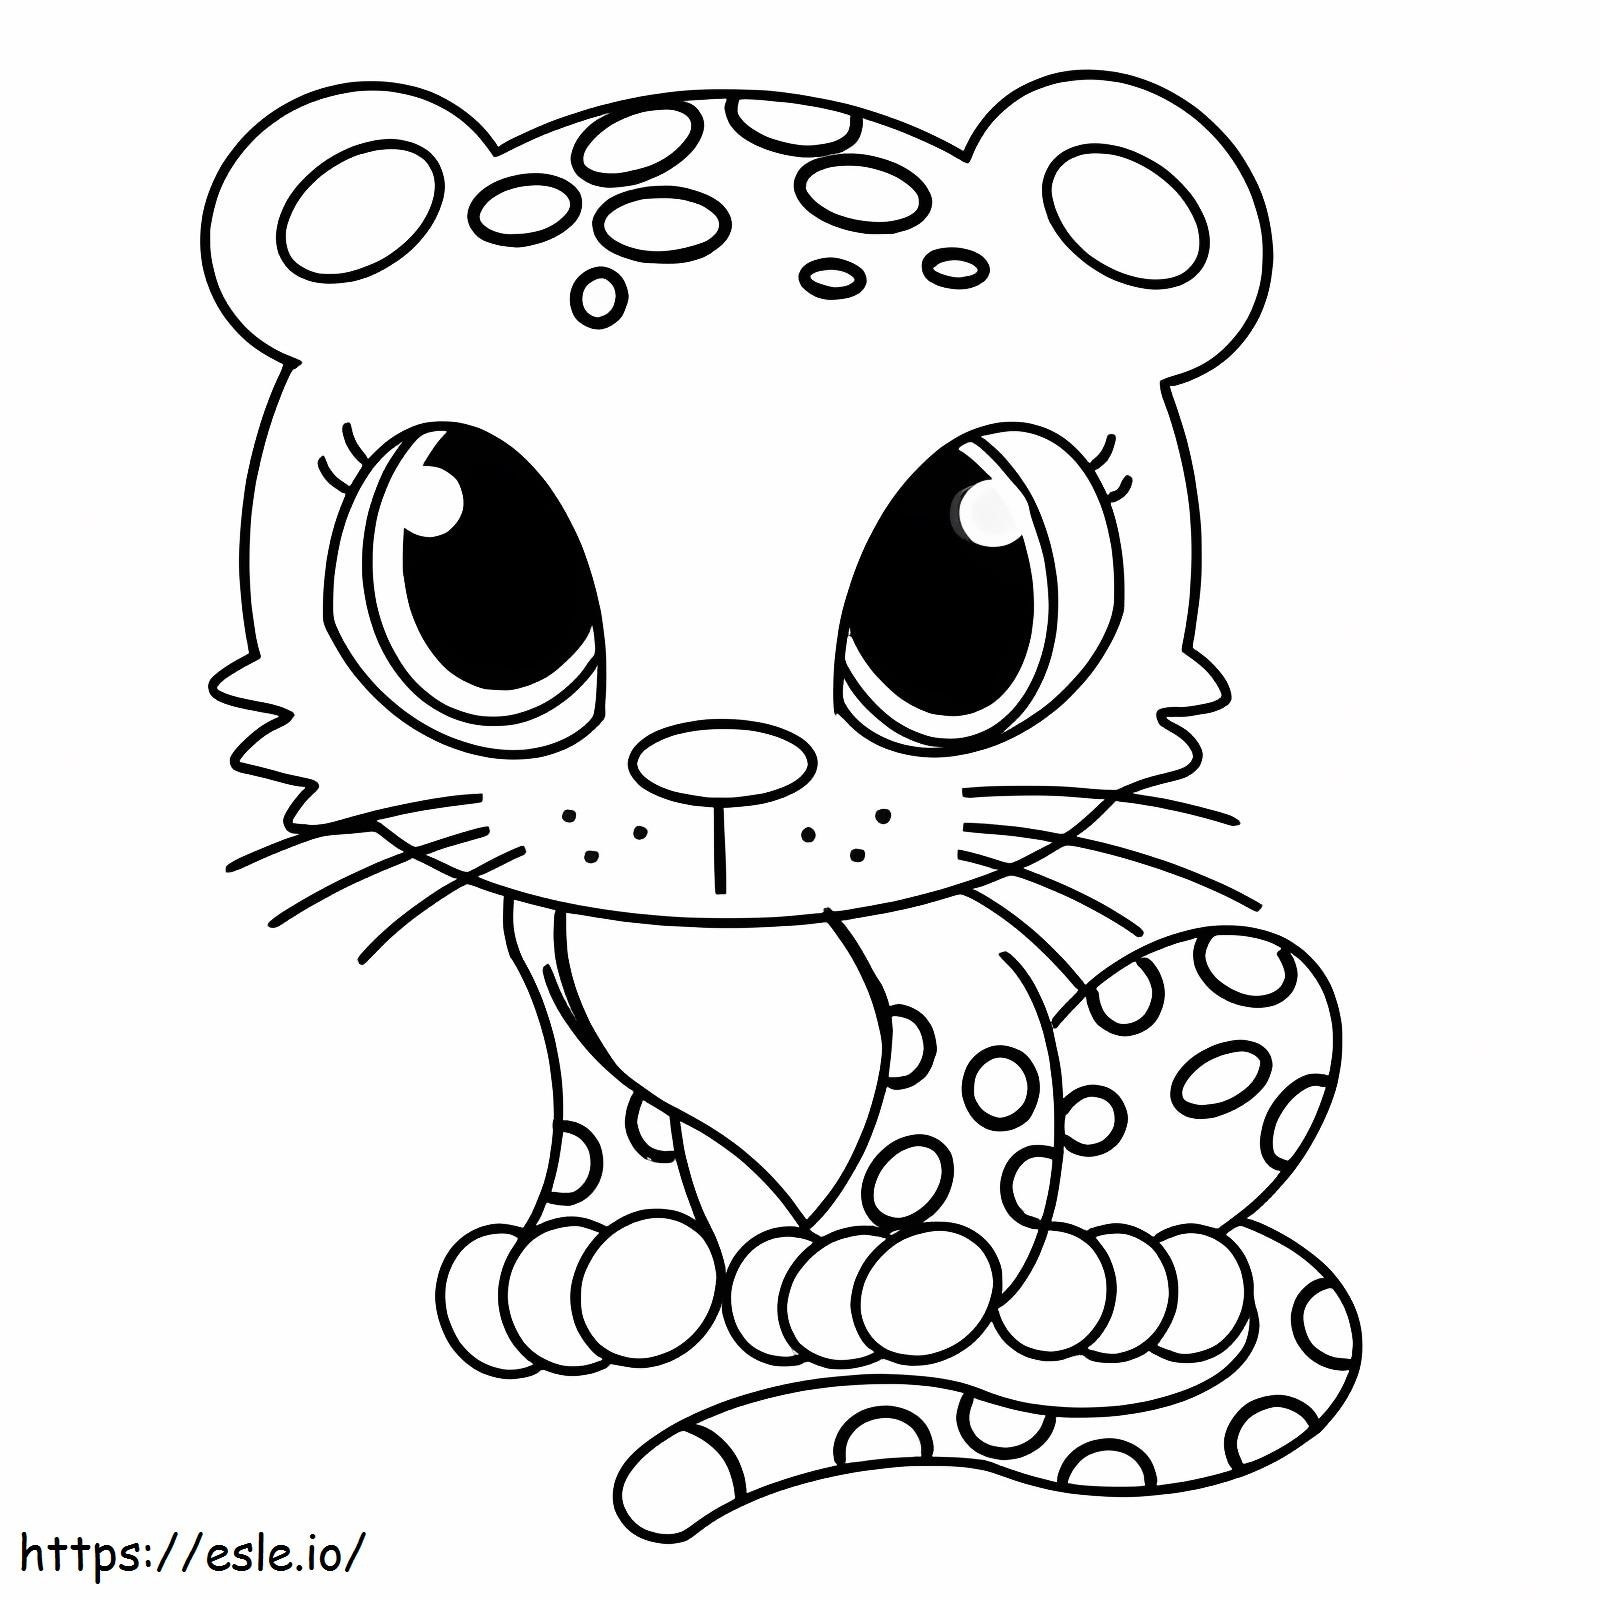 Söpö vauvaleopardi värityskuva